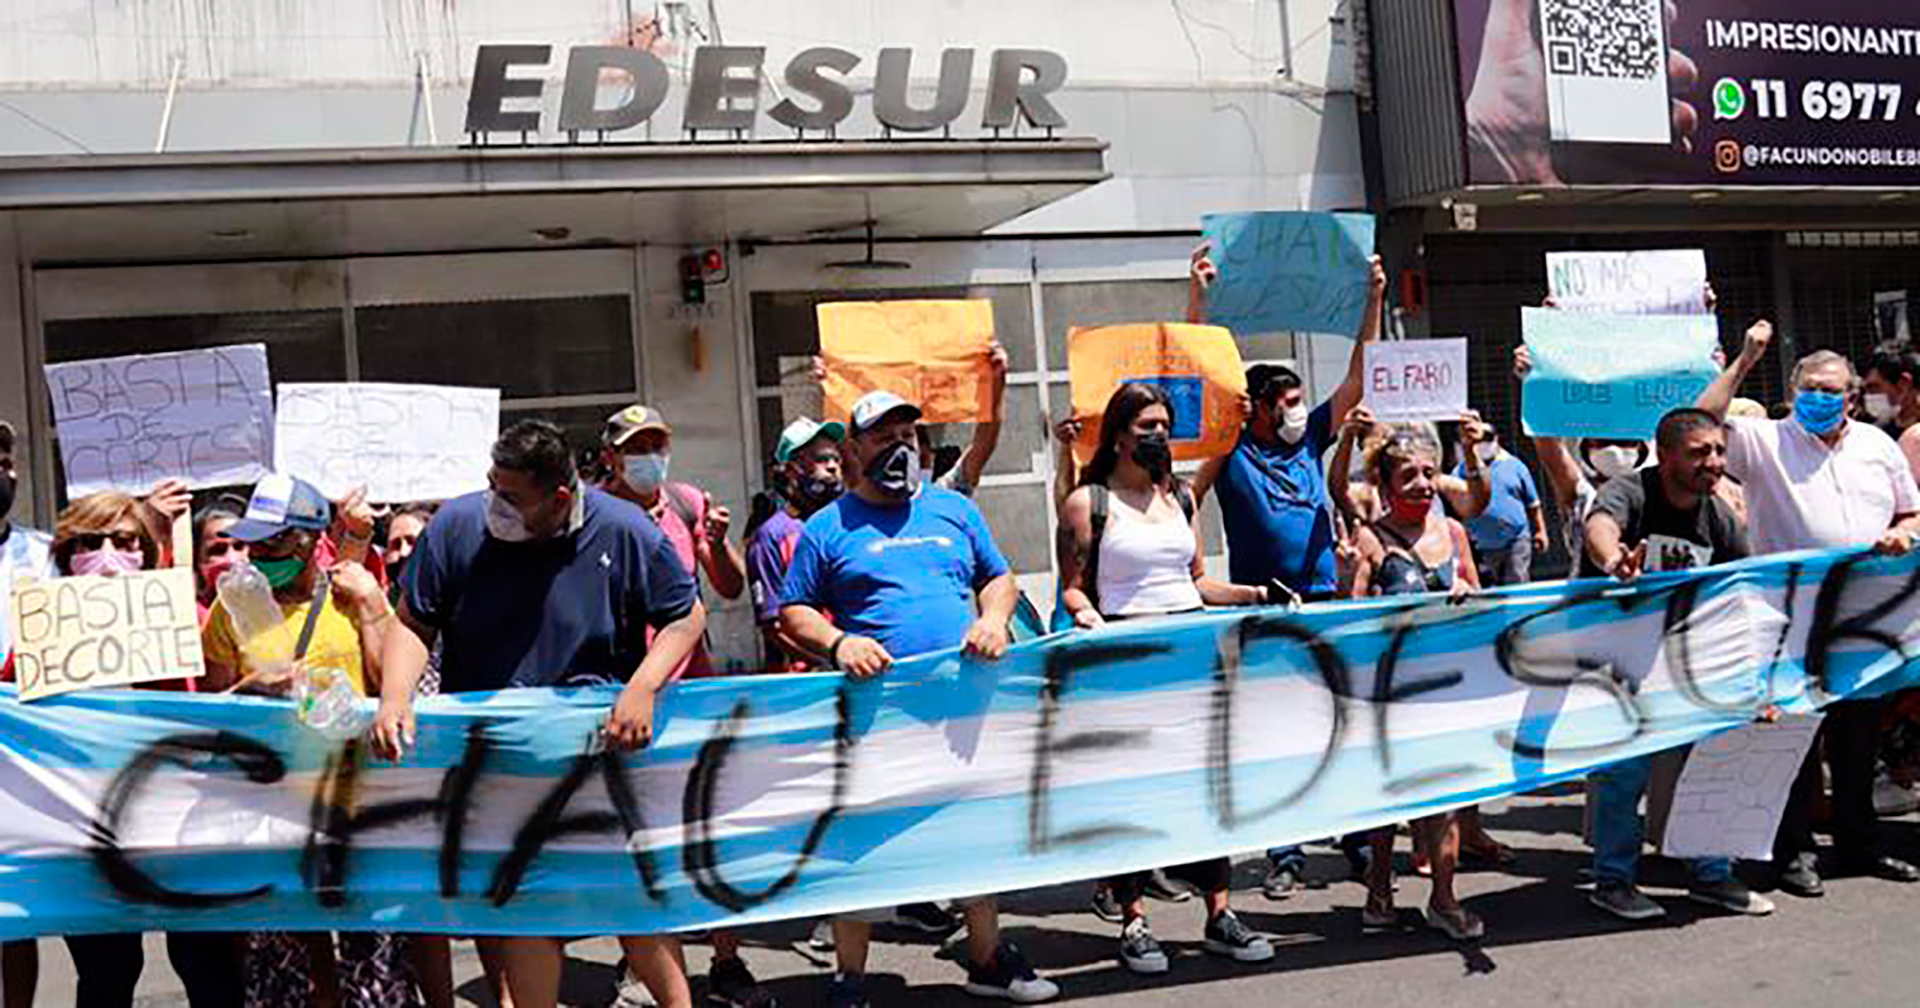 El martes pasado, decenas de vecinos de Lomas de Zamora hicieron una protesta en la puerta del edificio de Edesur (Foto/La Unión)